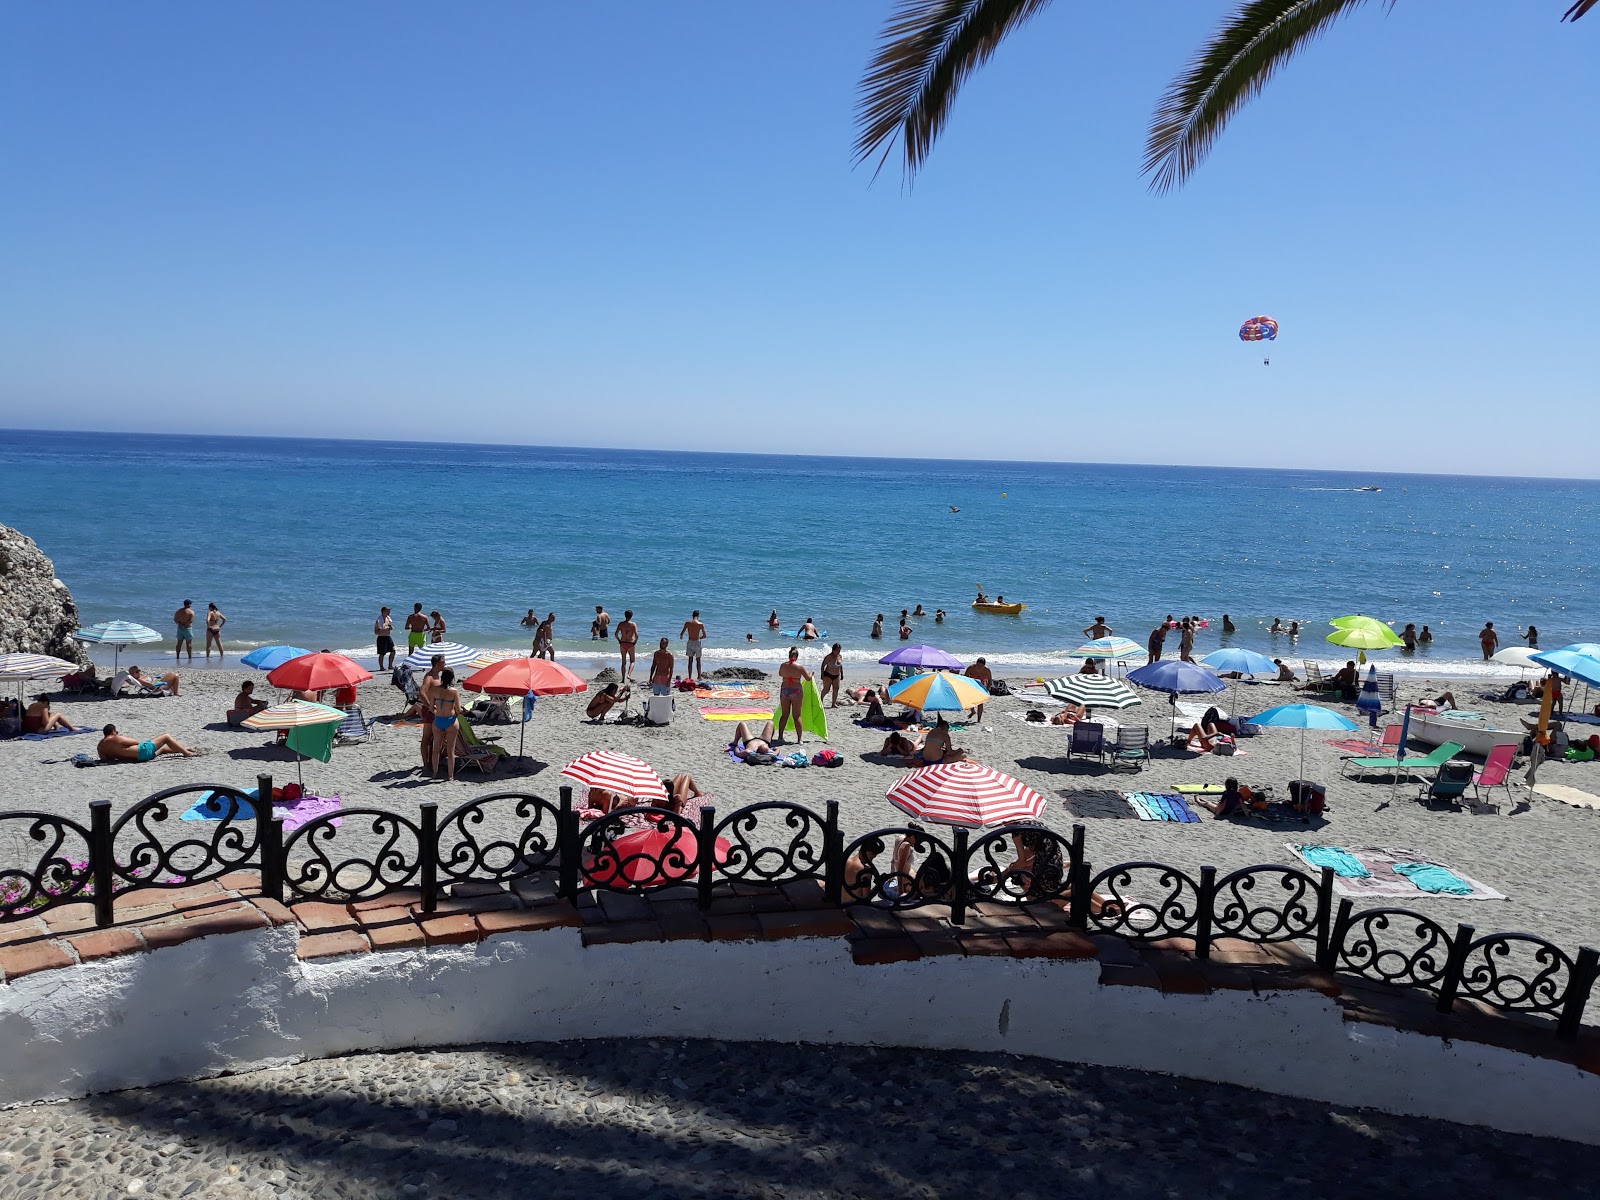 Playa la Caletilla'in fotoğrafı çok temiz temizlik seviyesi ile